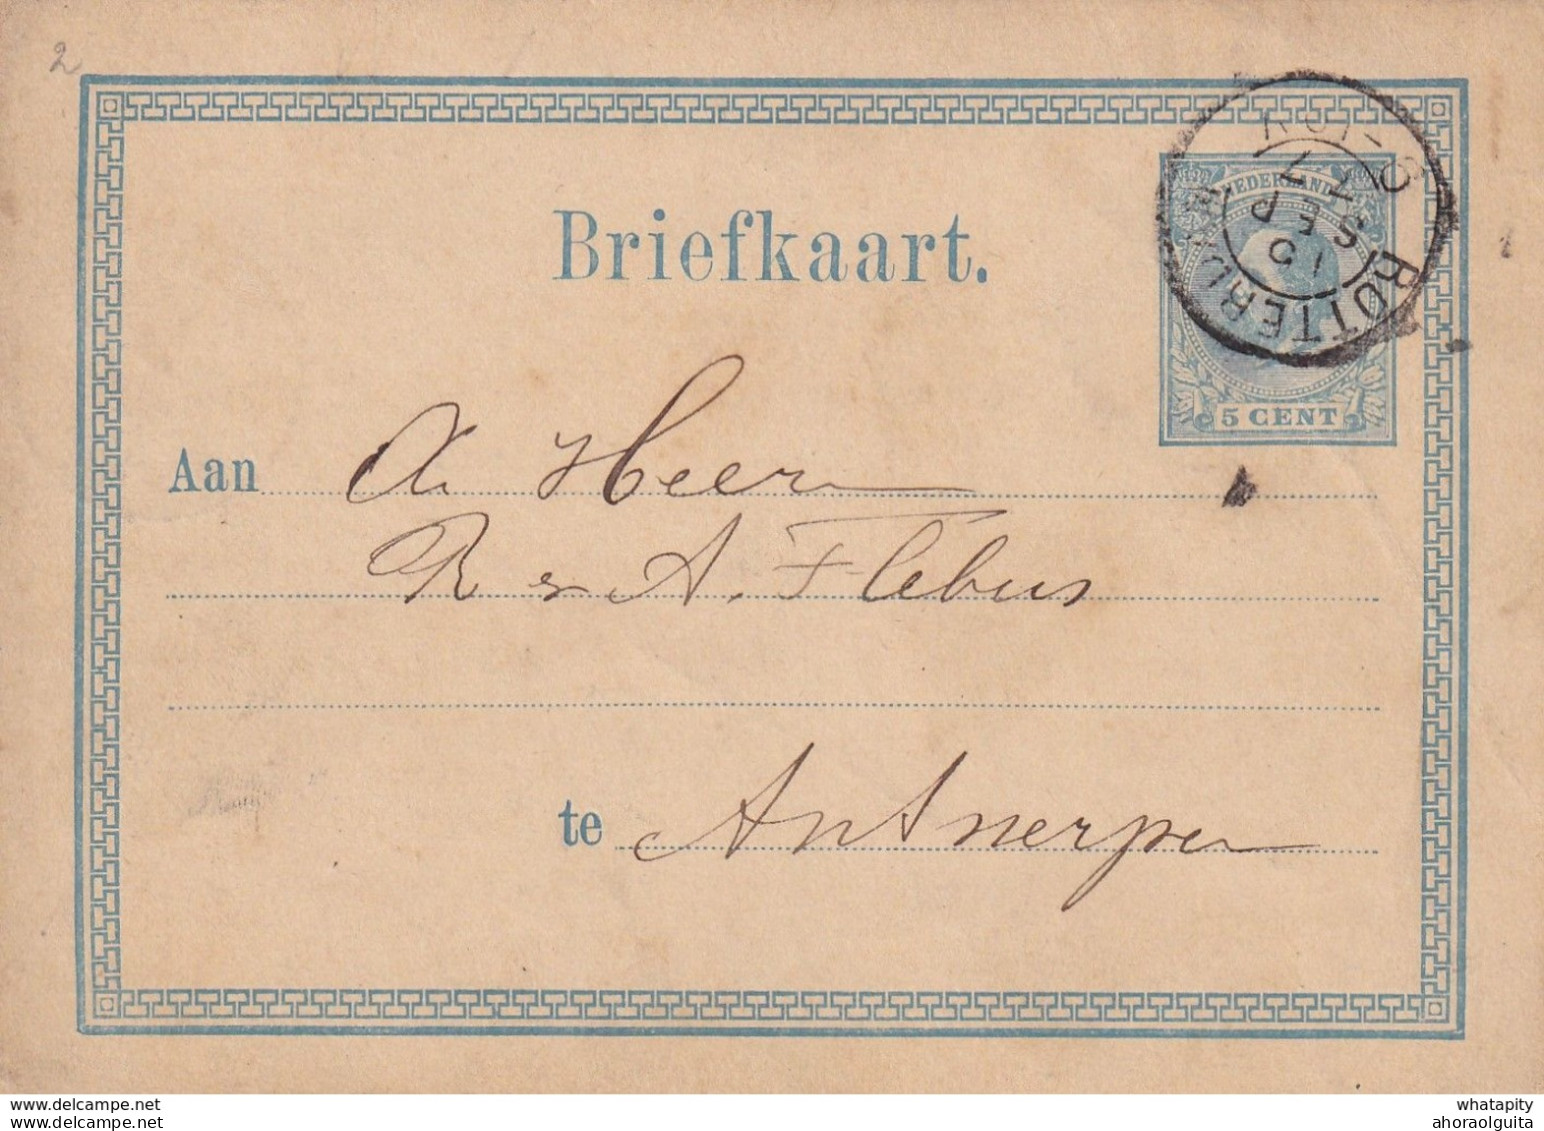 DDX 300 -- 3 X Entier Postal Pays-Bas 1876/7 - Cachets De Passage PAYS BAS Par ANVERS - Bureaux De Passage